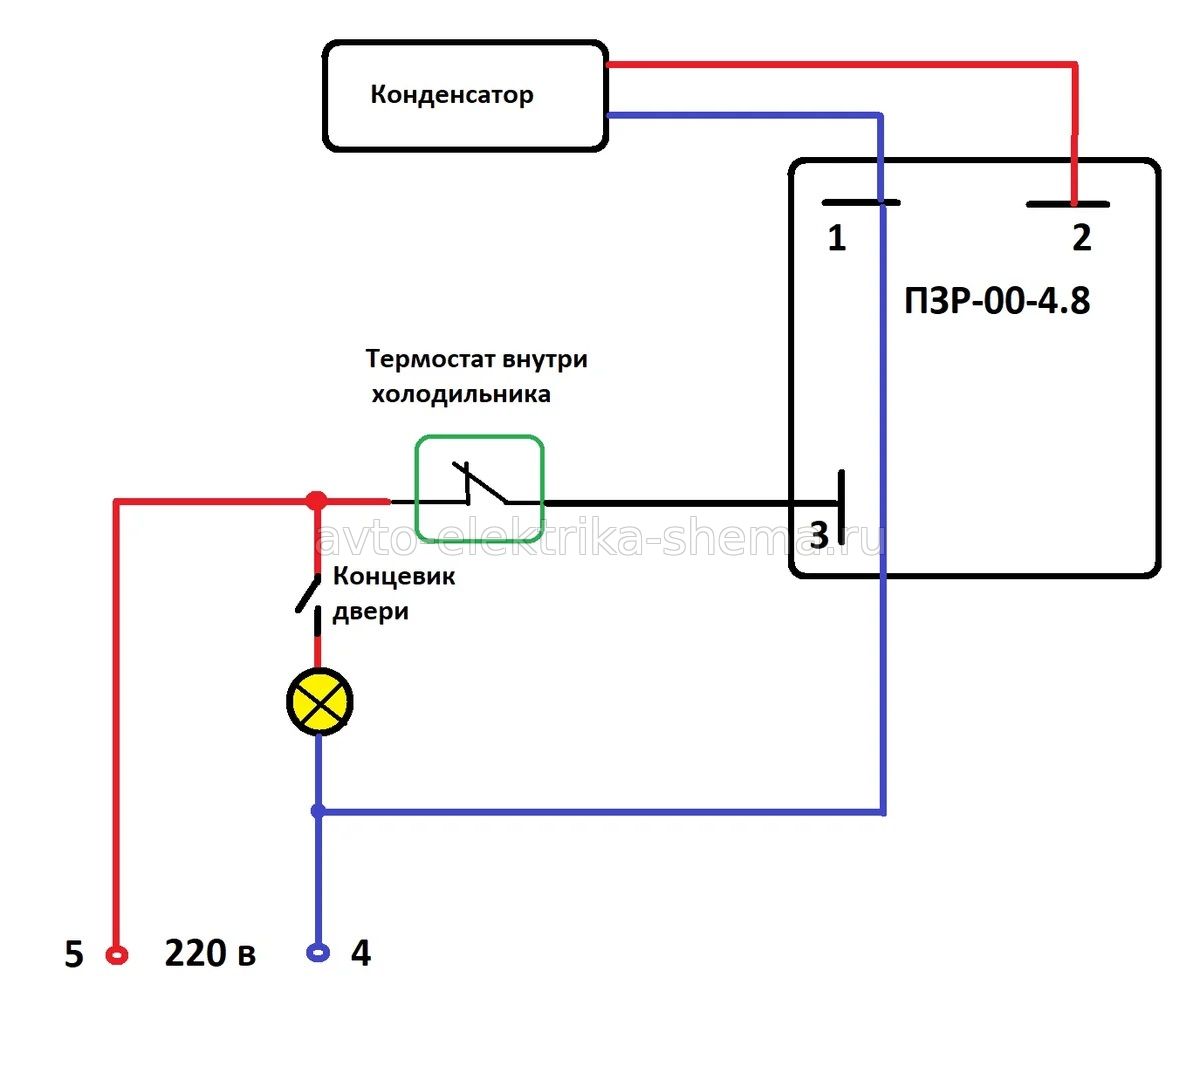 Схема подключения ПЗР-00-4.8 к холодильнику Nord